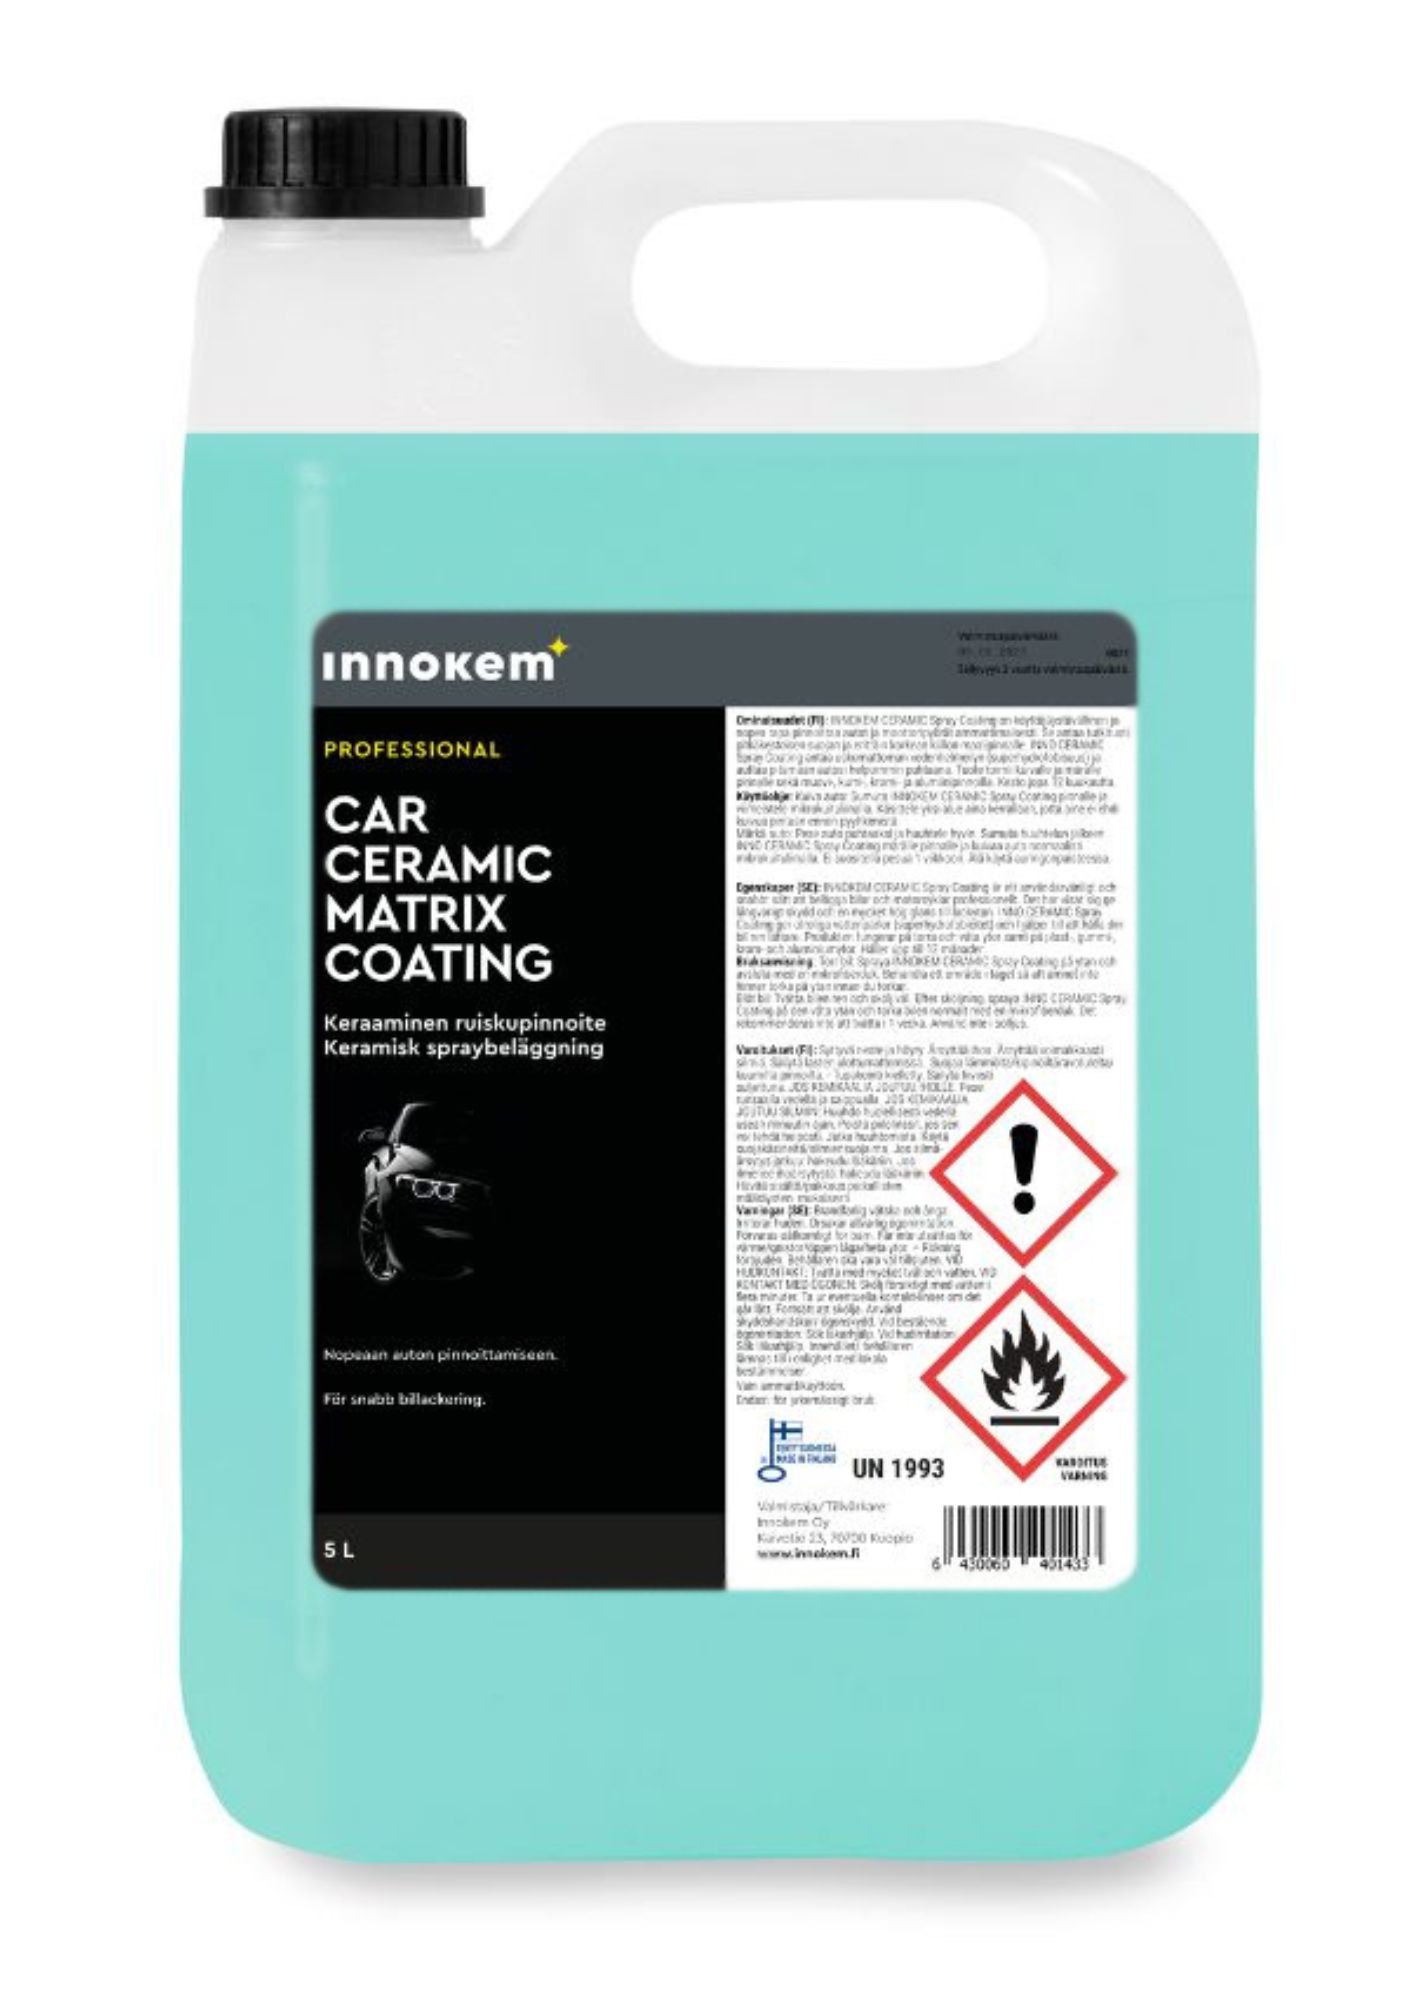 innokem ceramic matrix coating beläggning 5l